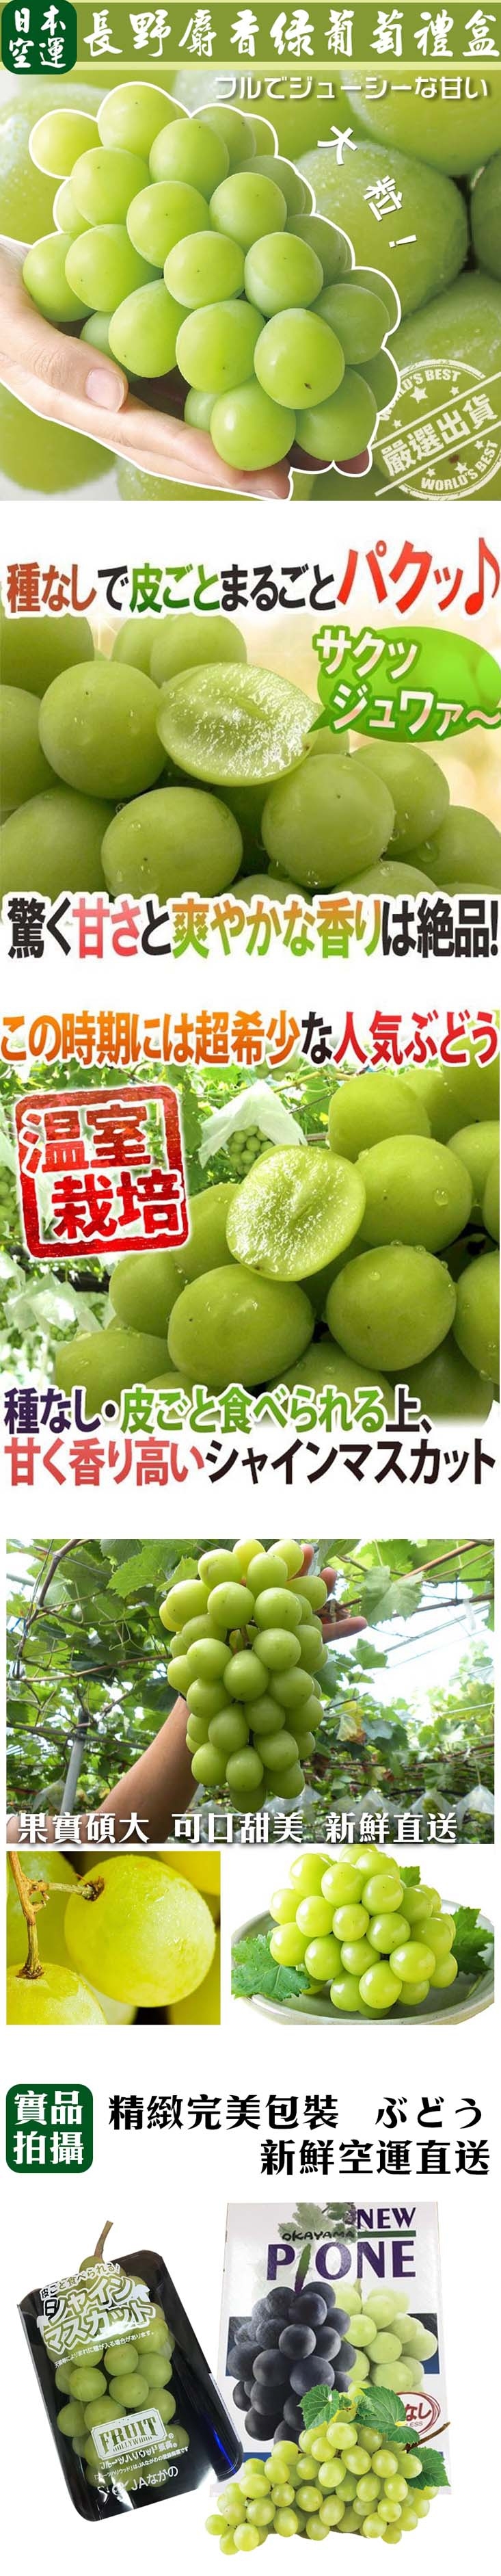       【WANG 蔬果】日本長野/山梨縣溫室麝香葡萄(4串_350-40